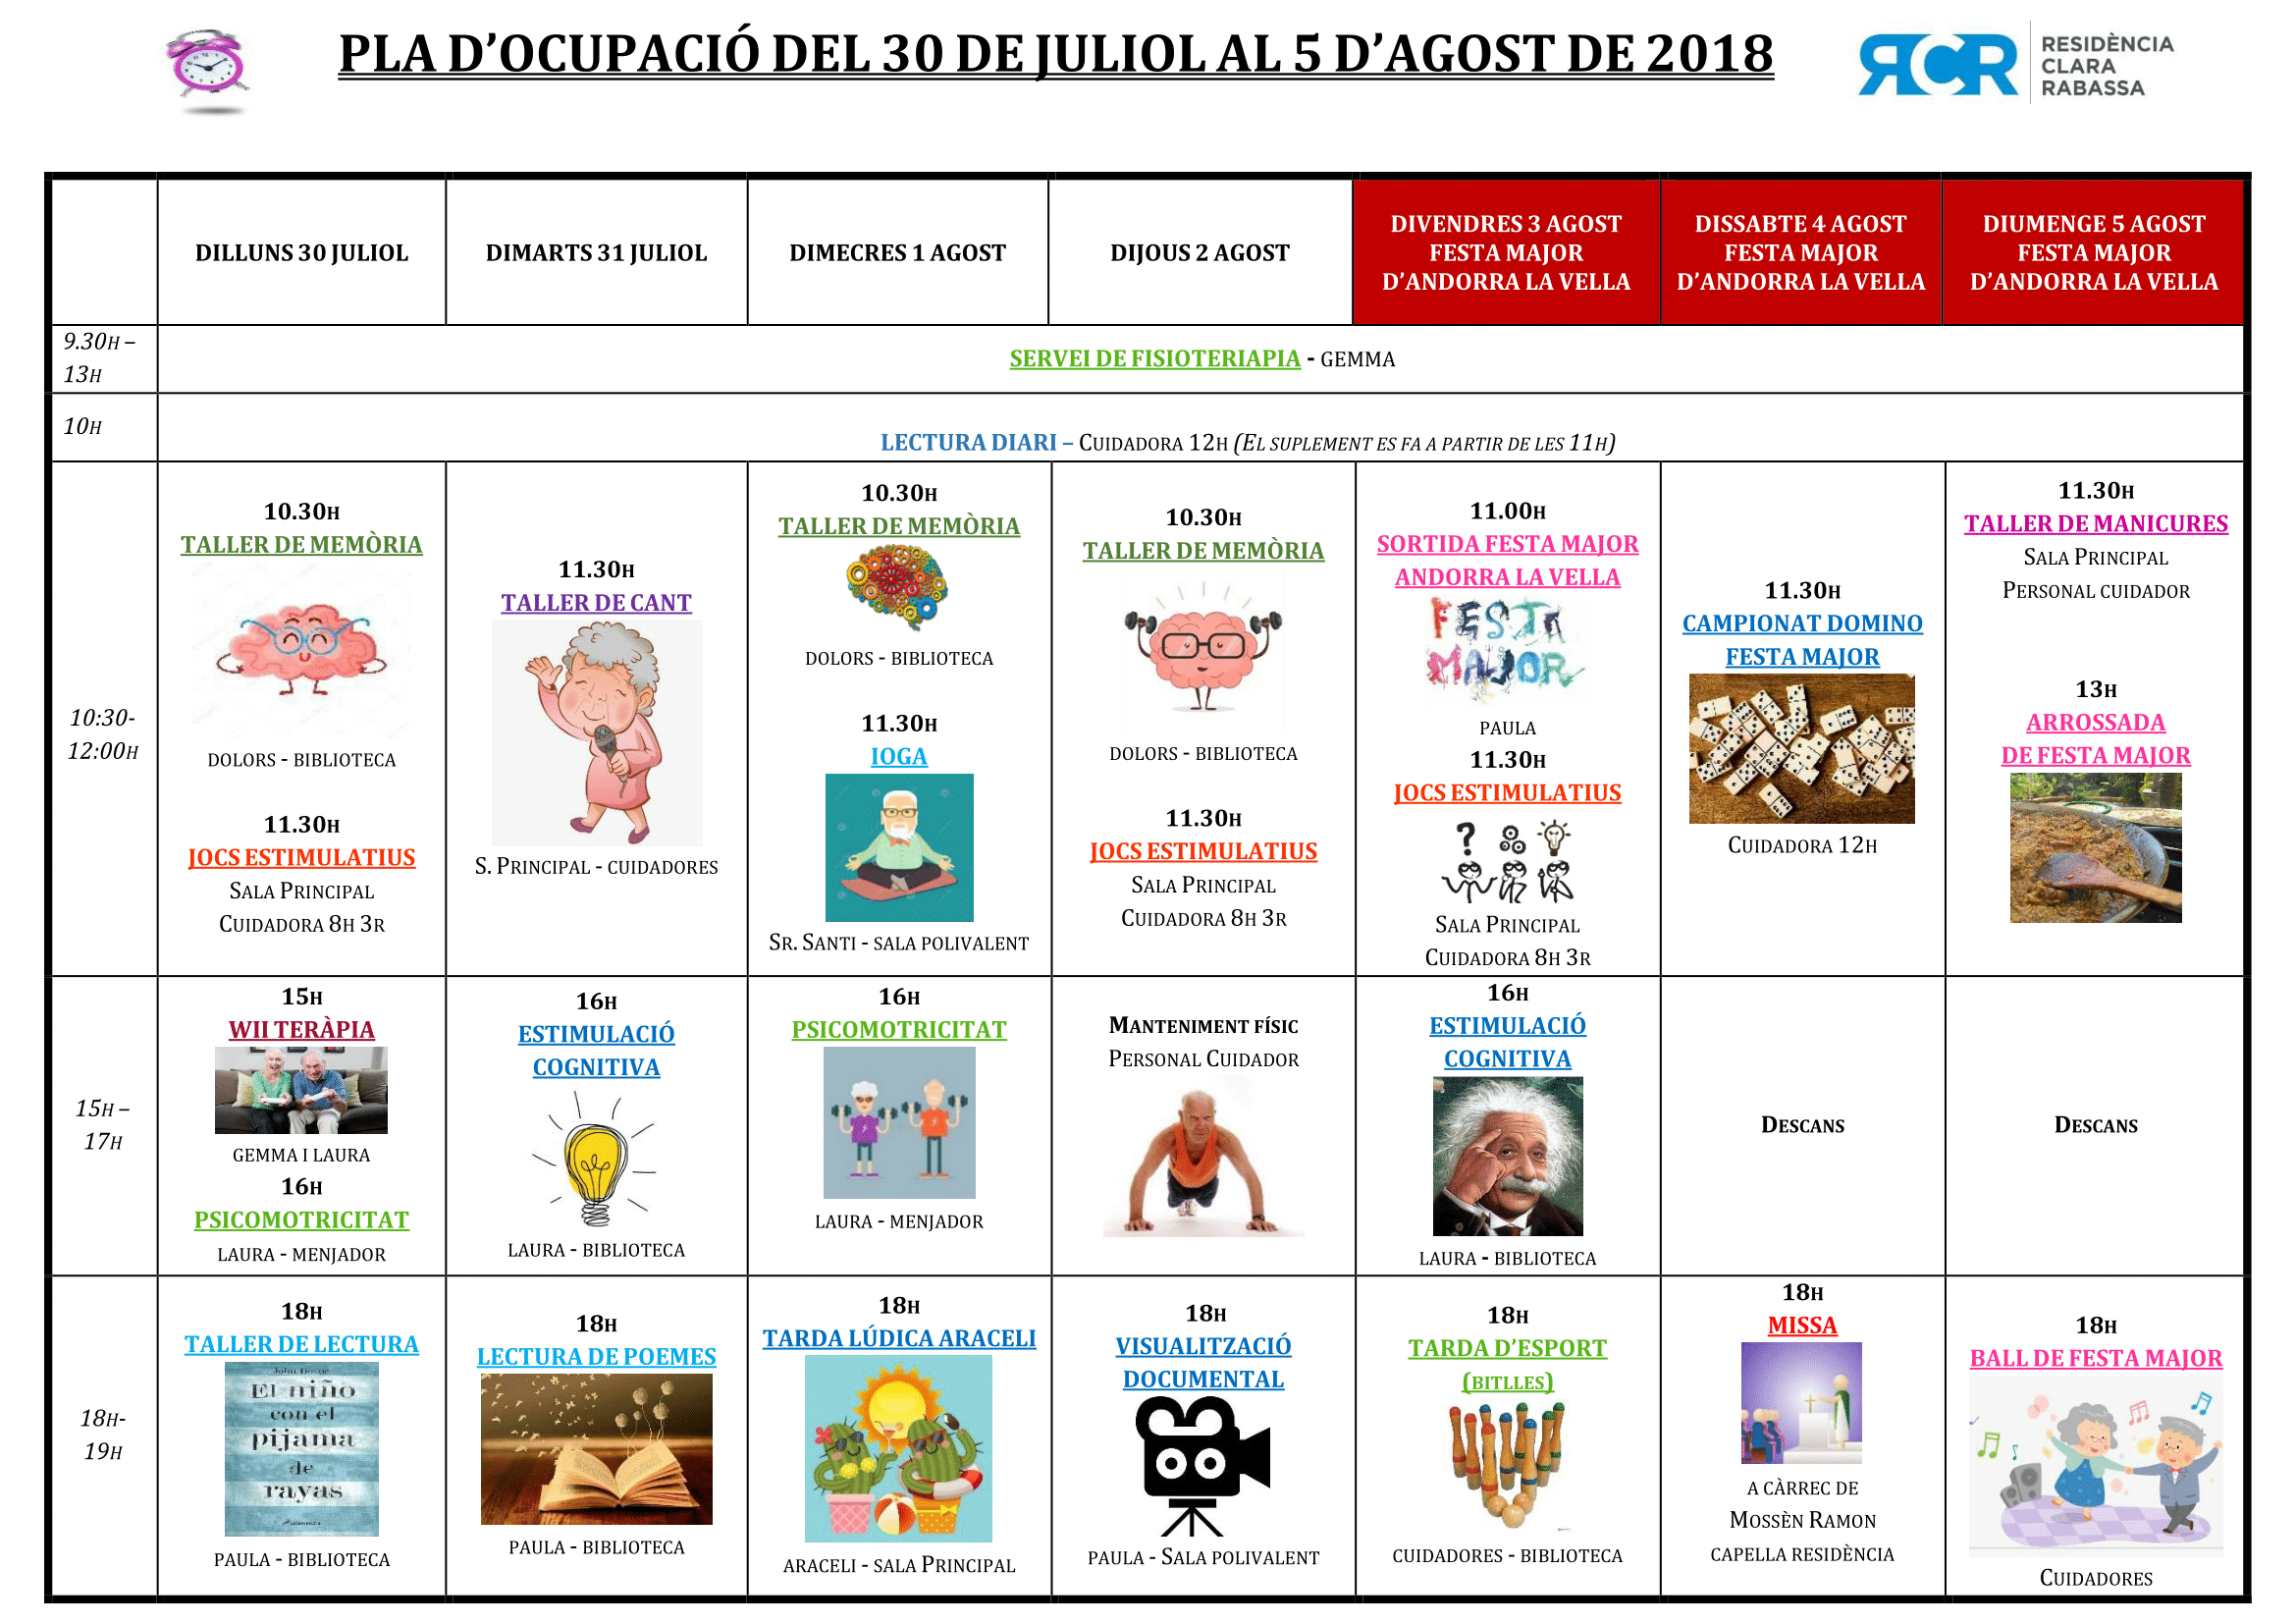 PLA OCUPACIÓ DEL 30 DE JULIOL AL 5 D’AGOST DE 2018